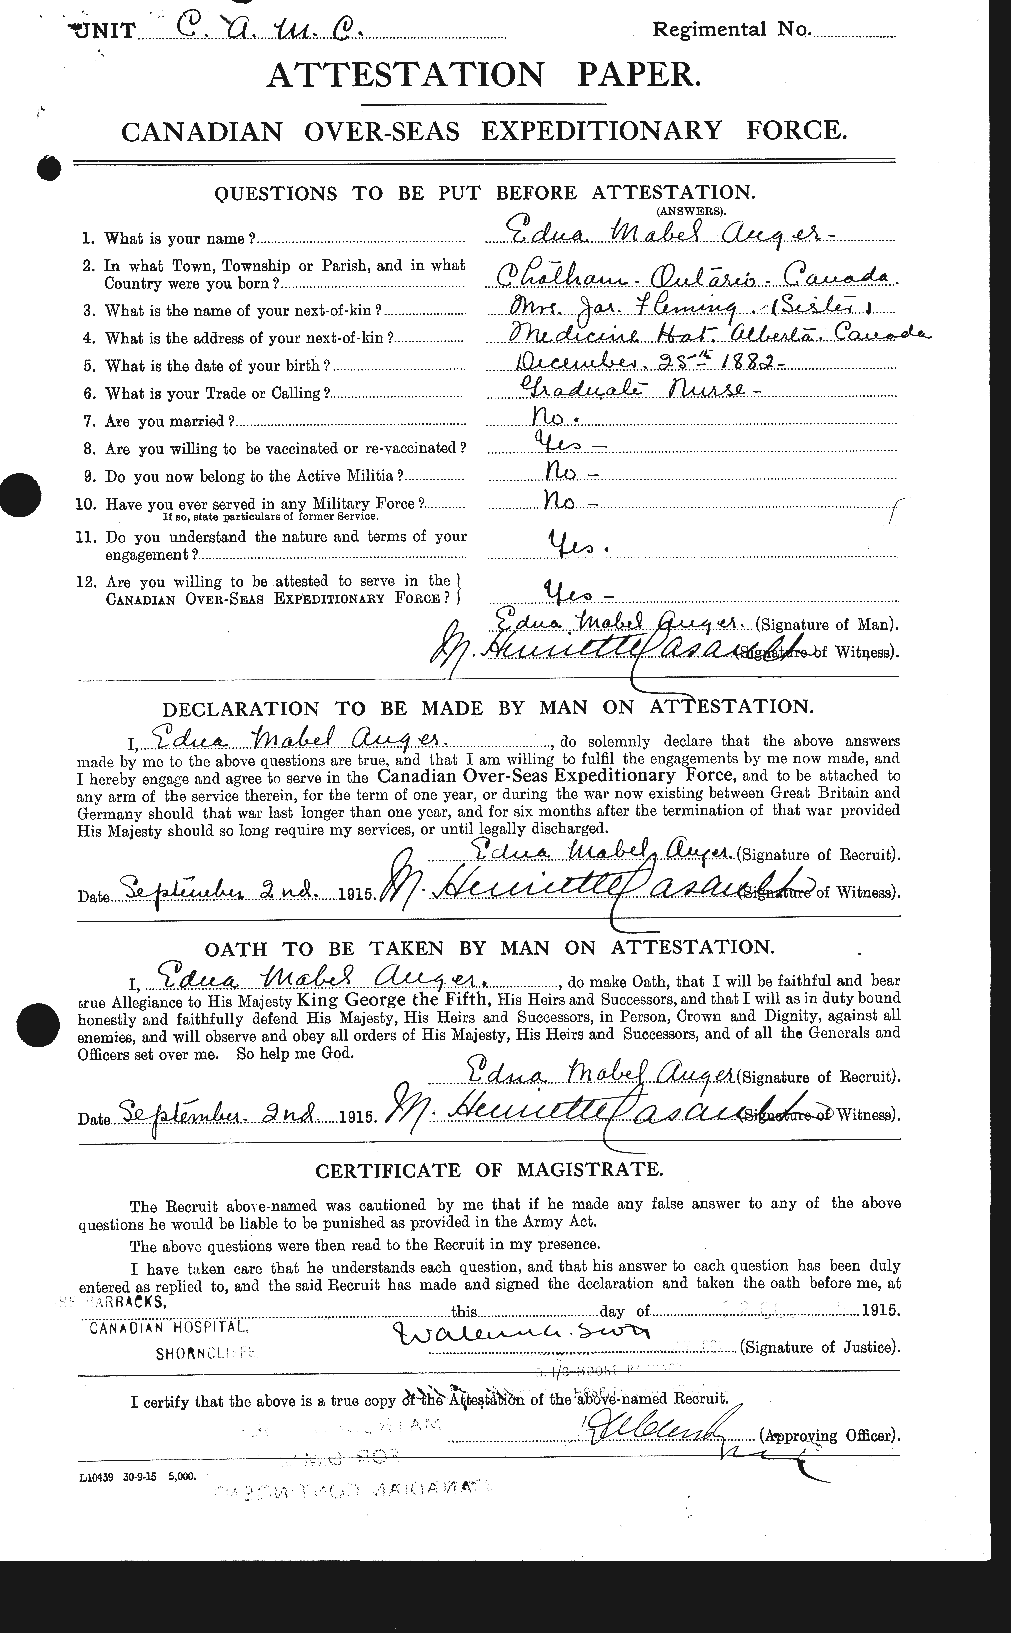 Dossiers du Personnel de la Première Guerre mondiale - CEC 224386a